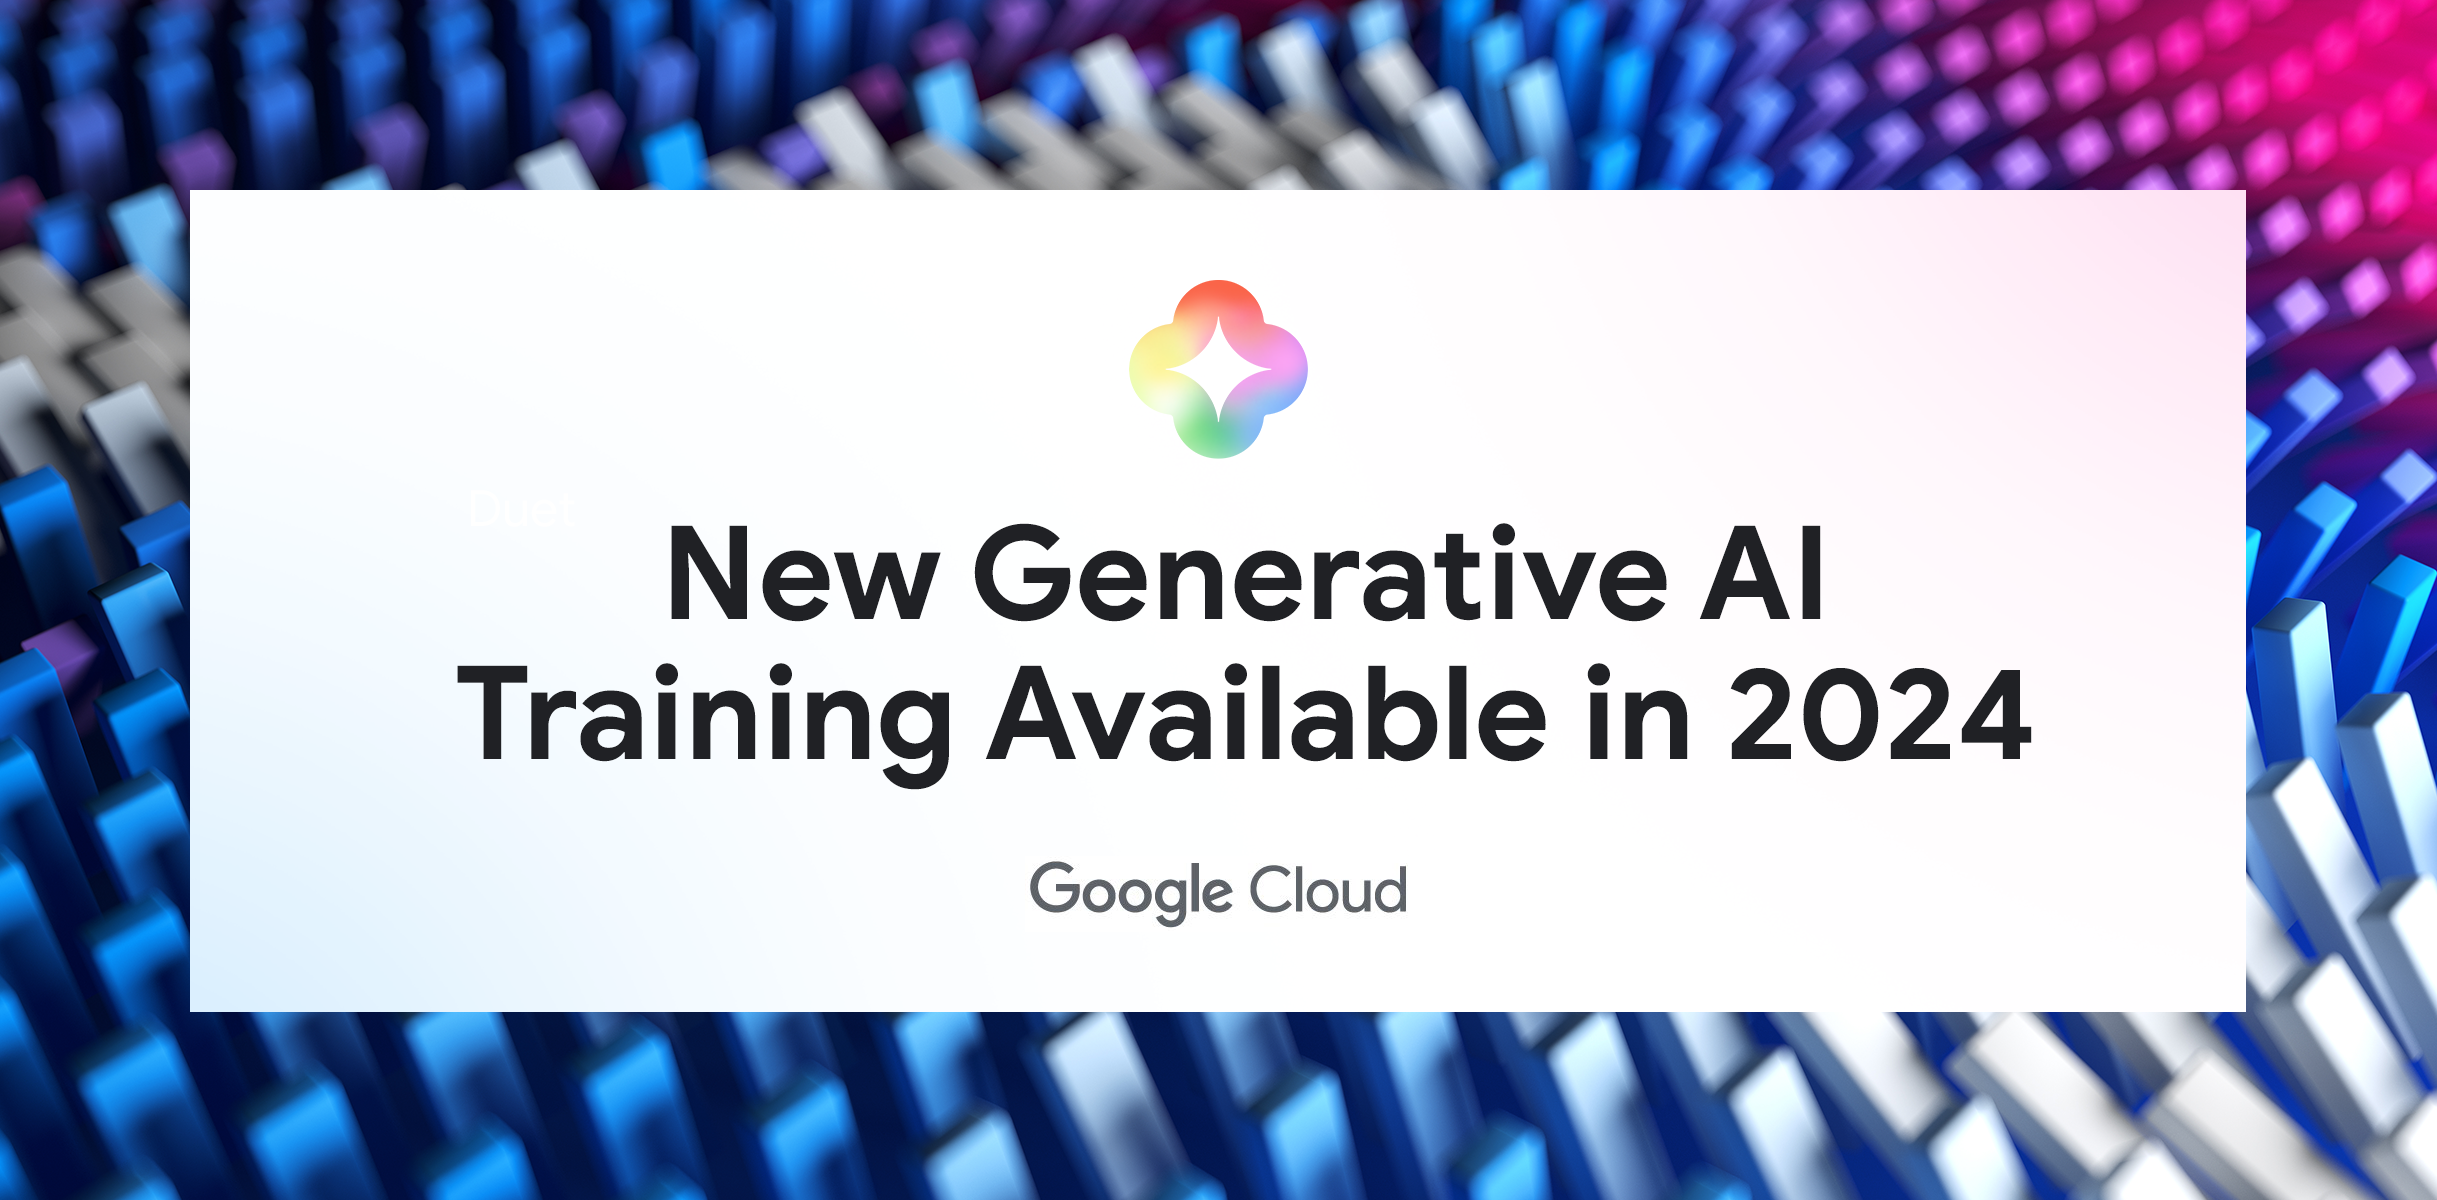 中央に「New Generative AI Training available in 2024」というテキストと、生成 AI と Google Cloud のロゴが入ったカラフルなバナー。